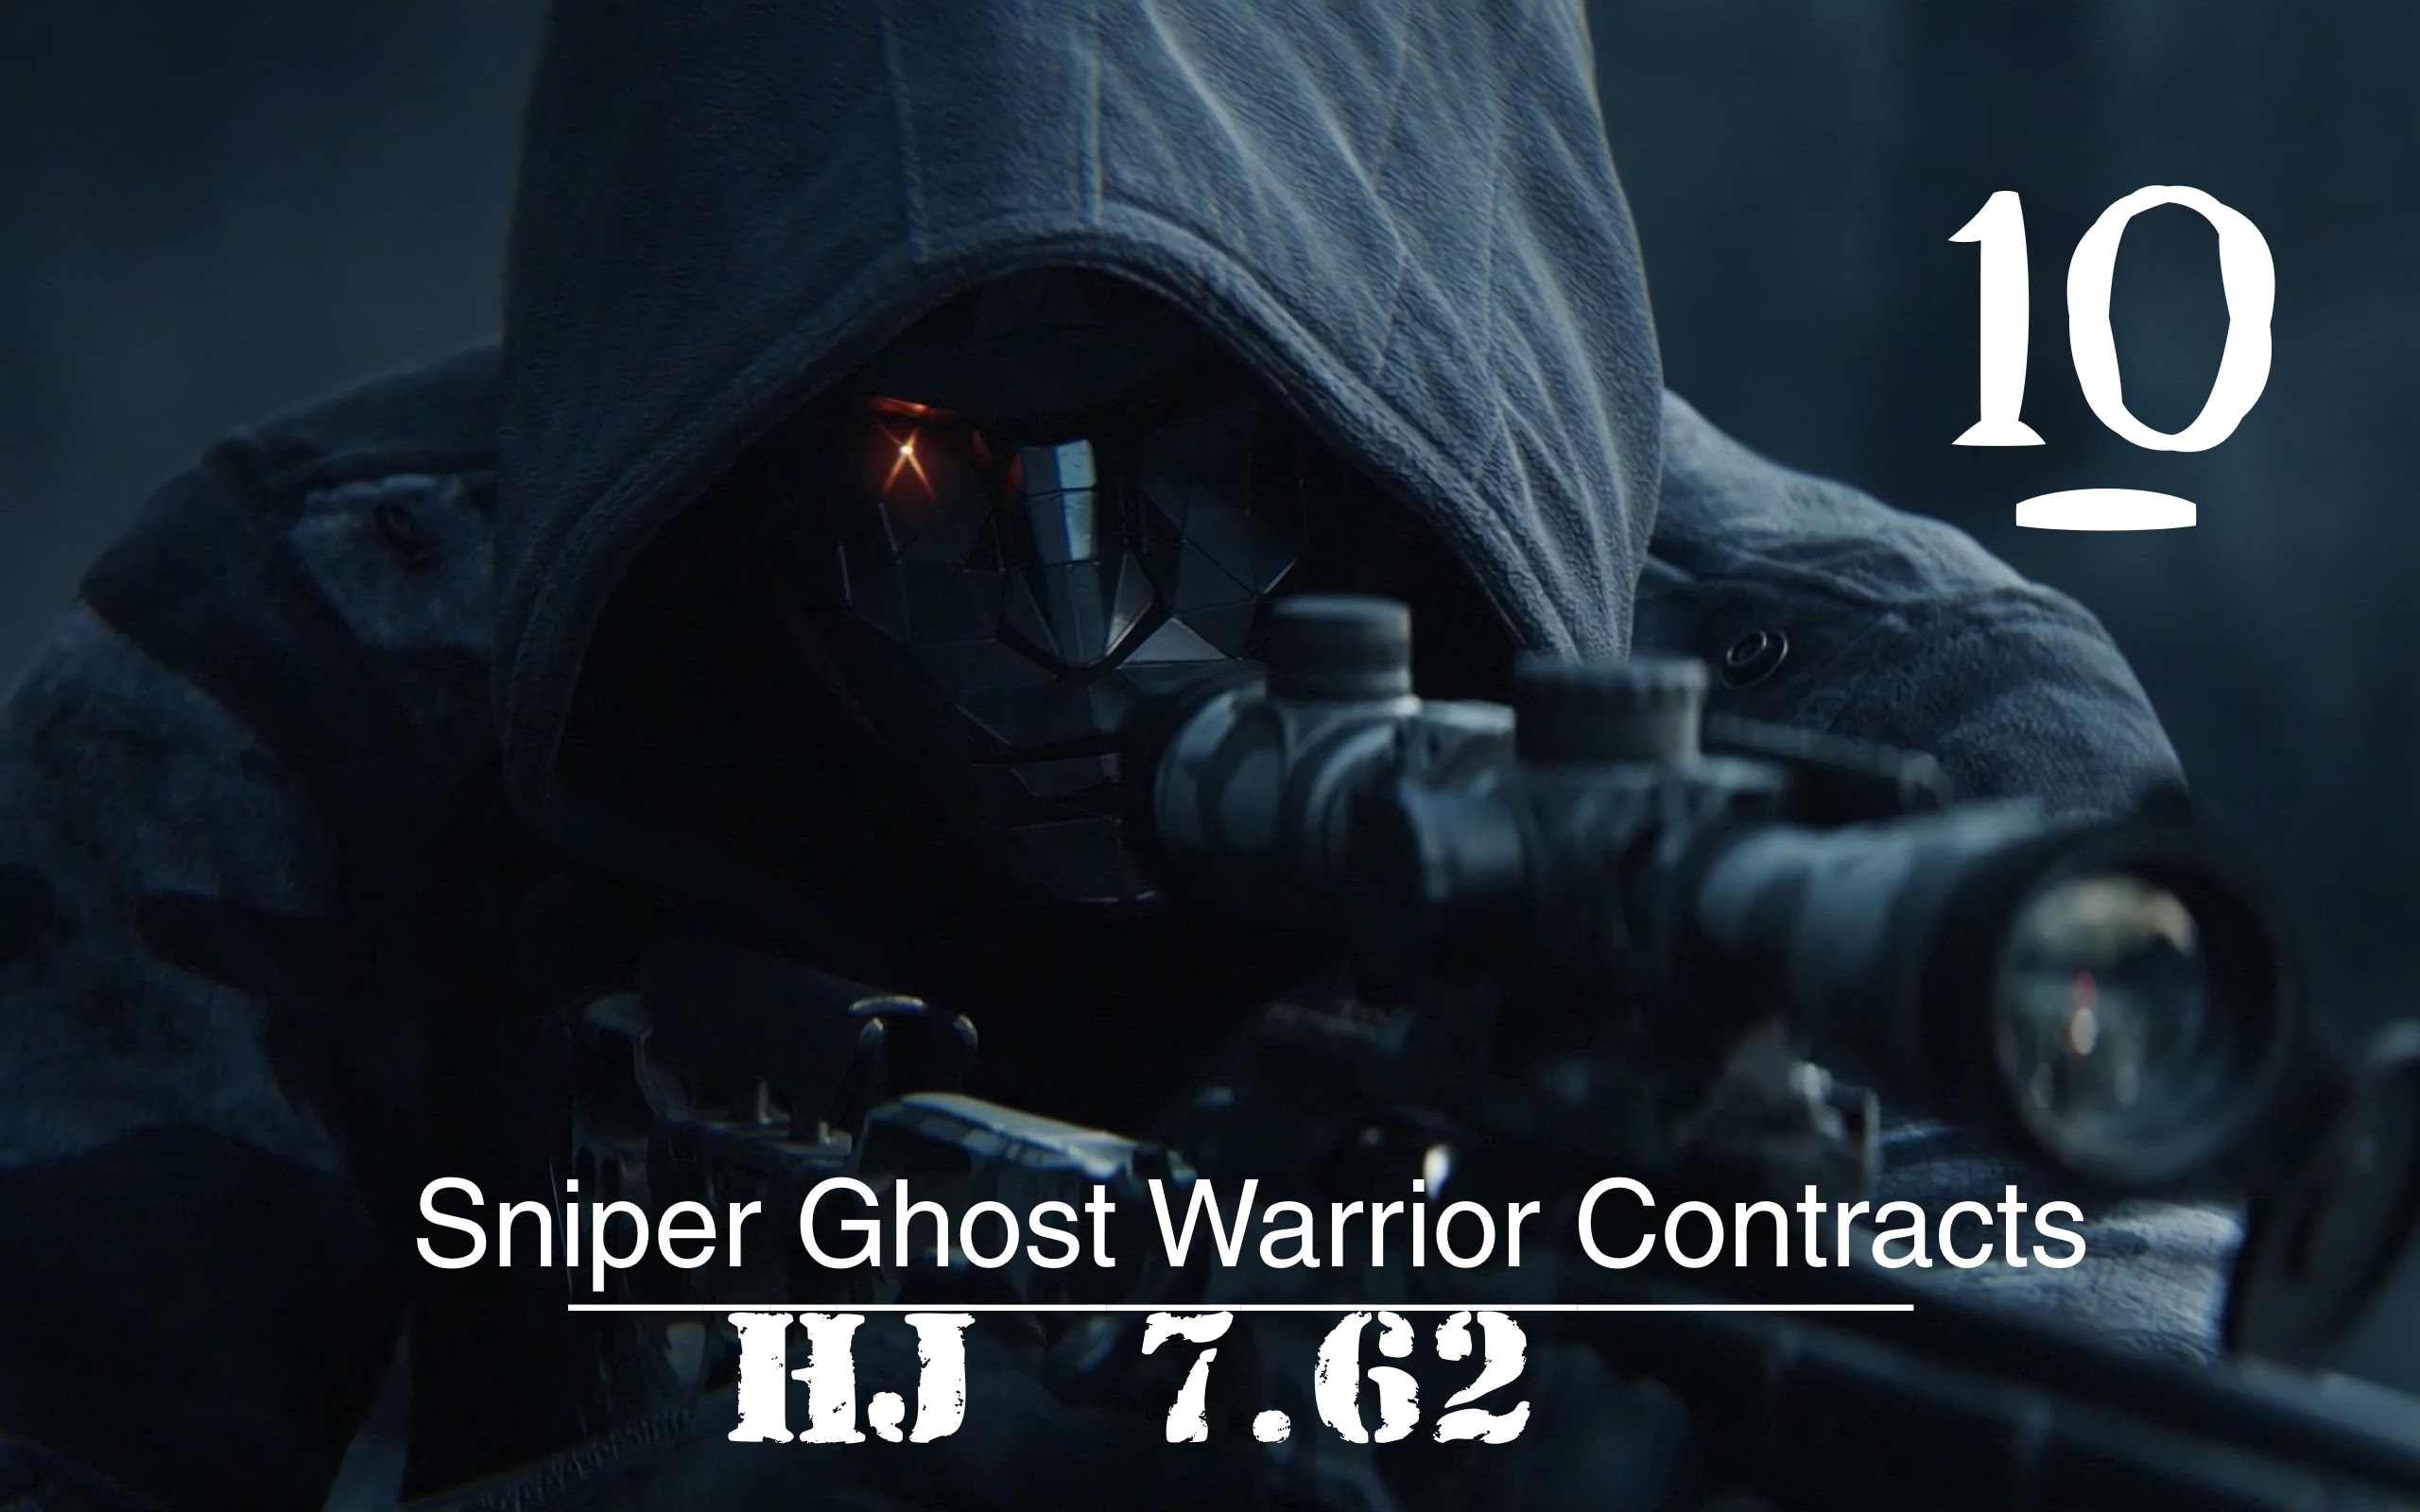 ▄︻デ══━一?[Sniper Ghost Warrior Contracts] :Рядовой Аренский is Dead.Конкурент Не успел!  #10